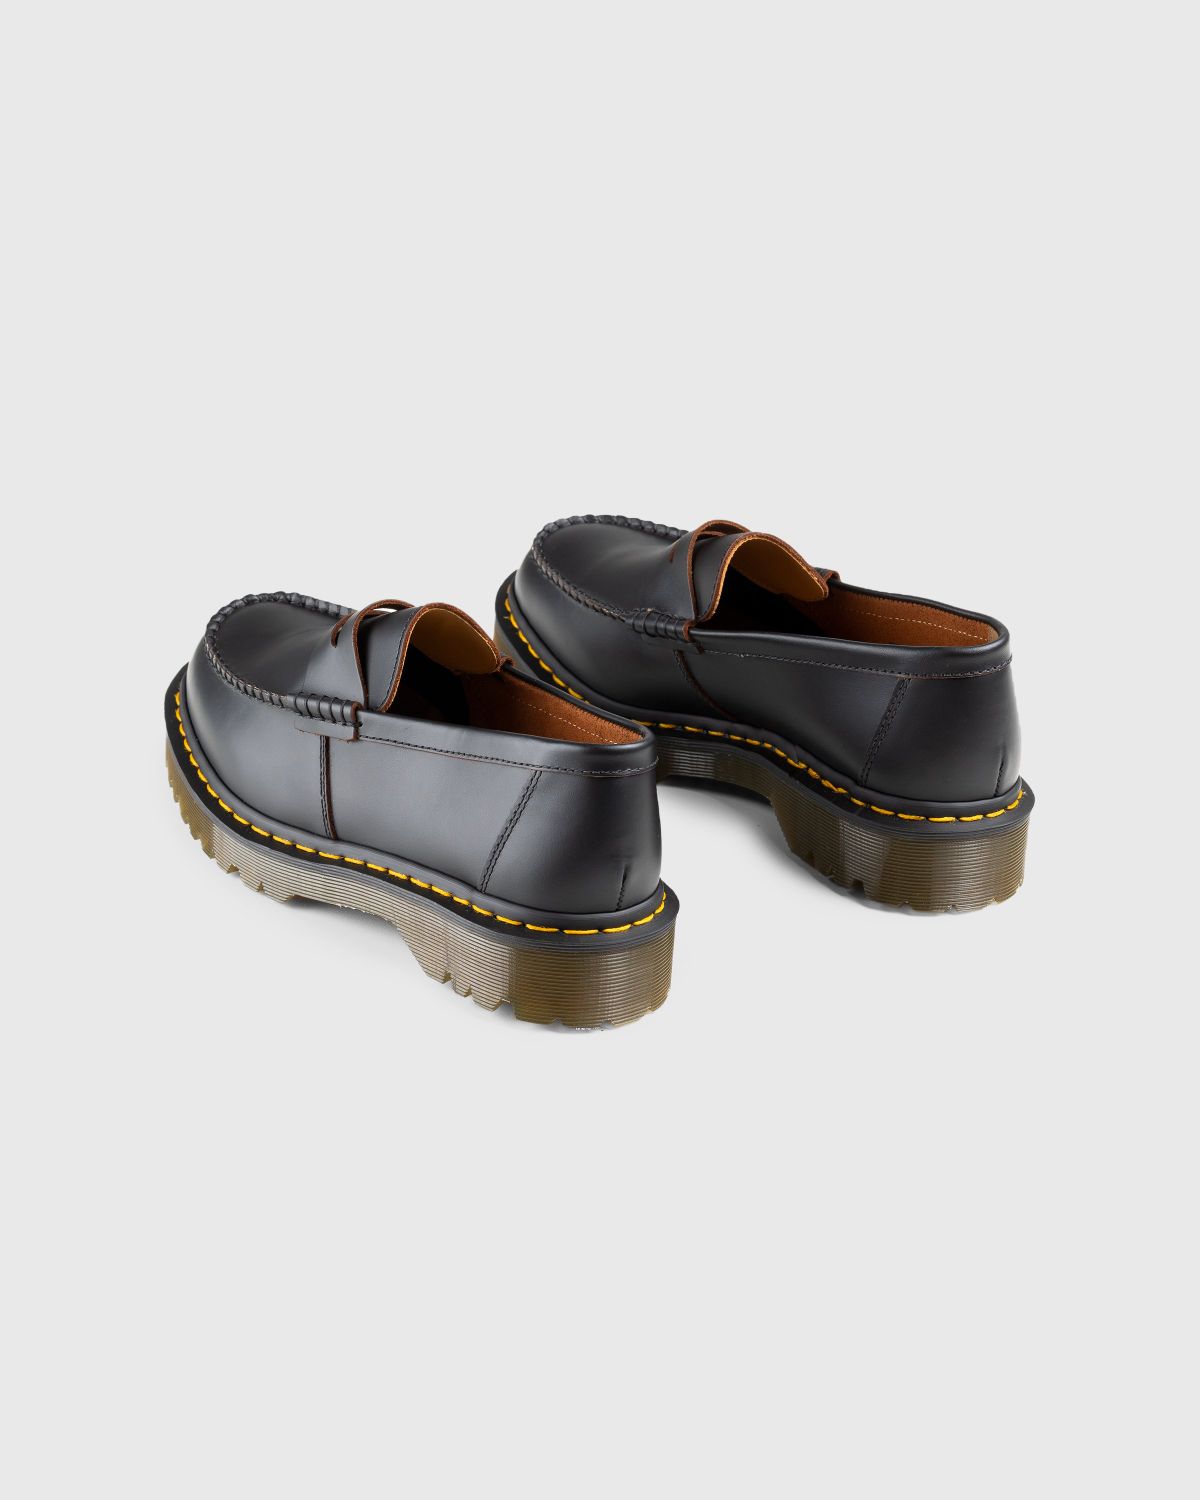 Dr. Martens – Penton Bex Quilon Leather Loafers Black - Shoes - Black - Image 4